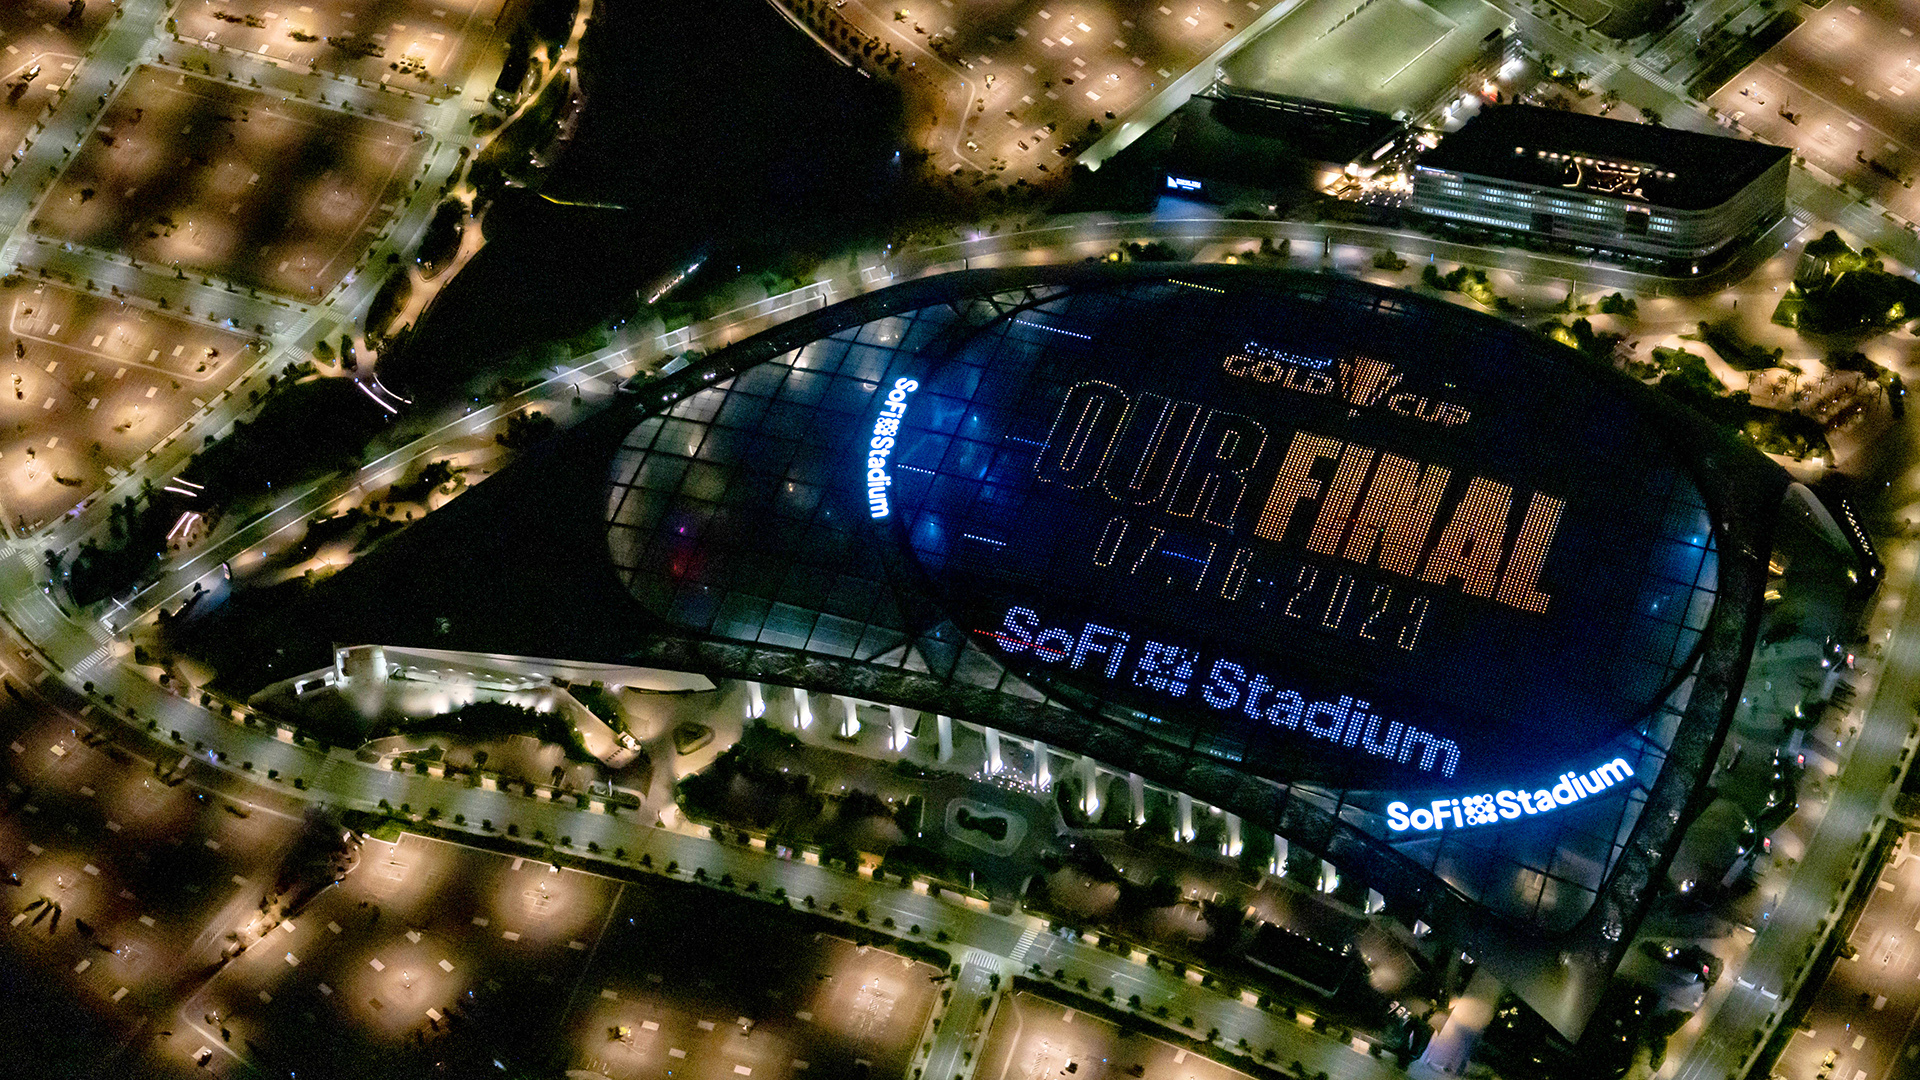 Arena mais cara do mundo, estádio SoFi de Los Angeles vai receber final da  Copa Ouro da Concacaf - Folha PE